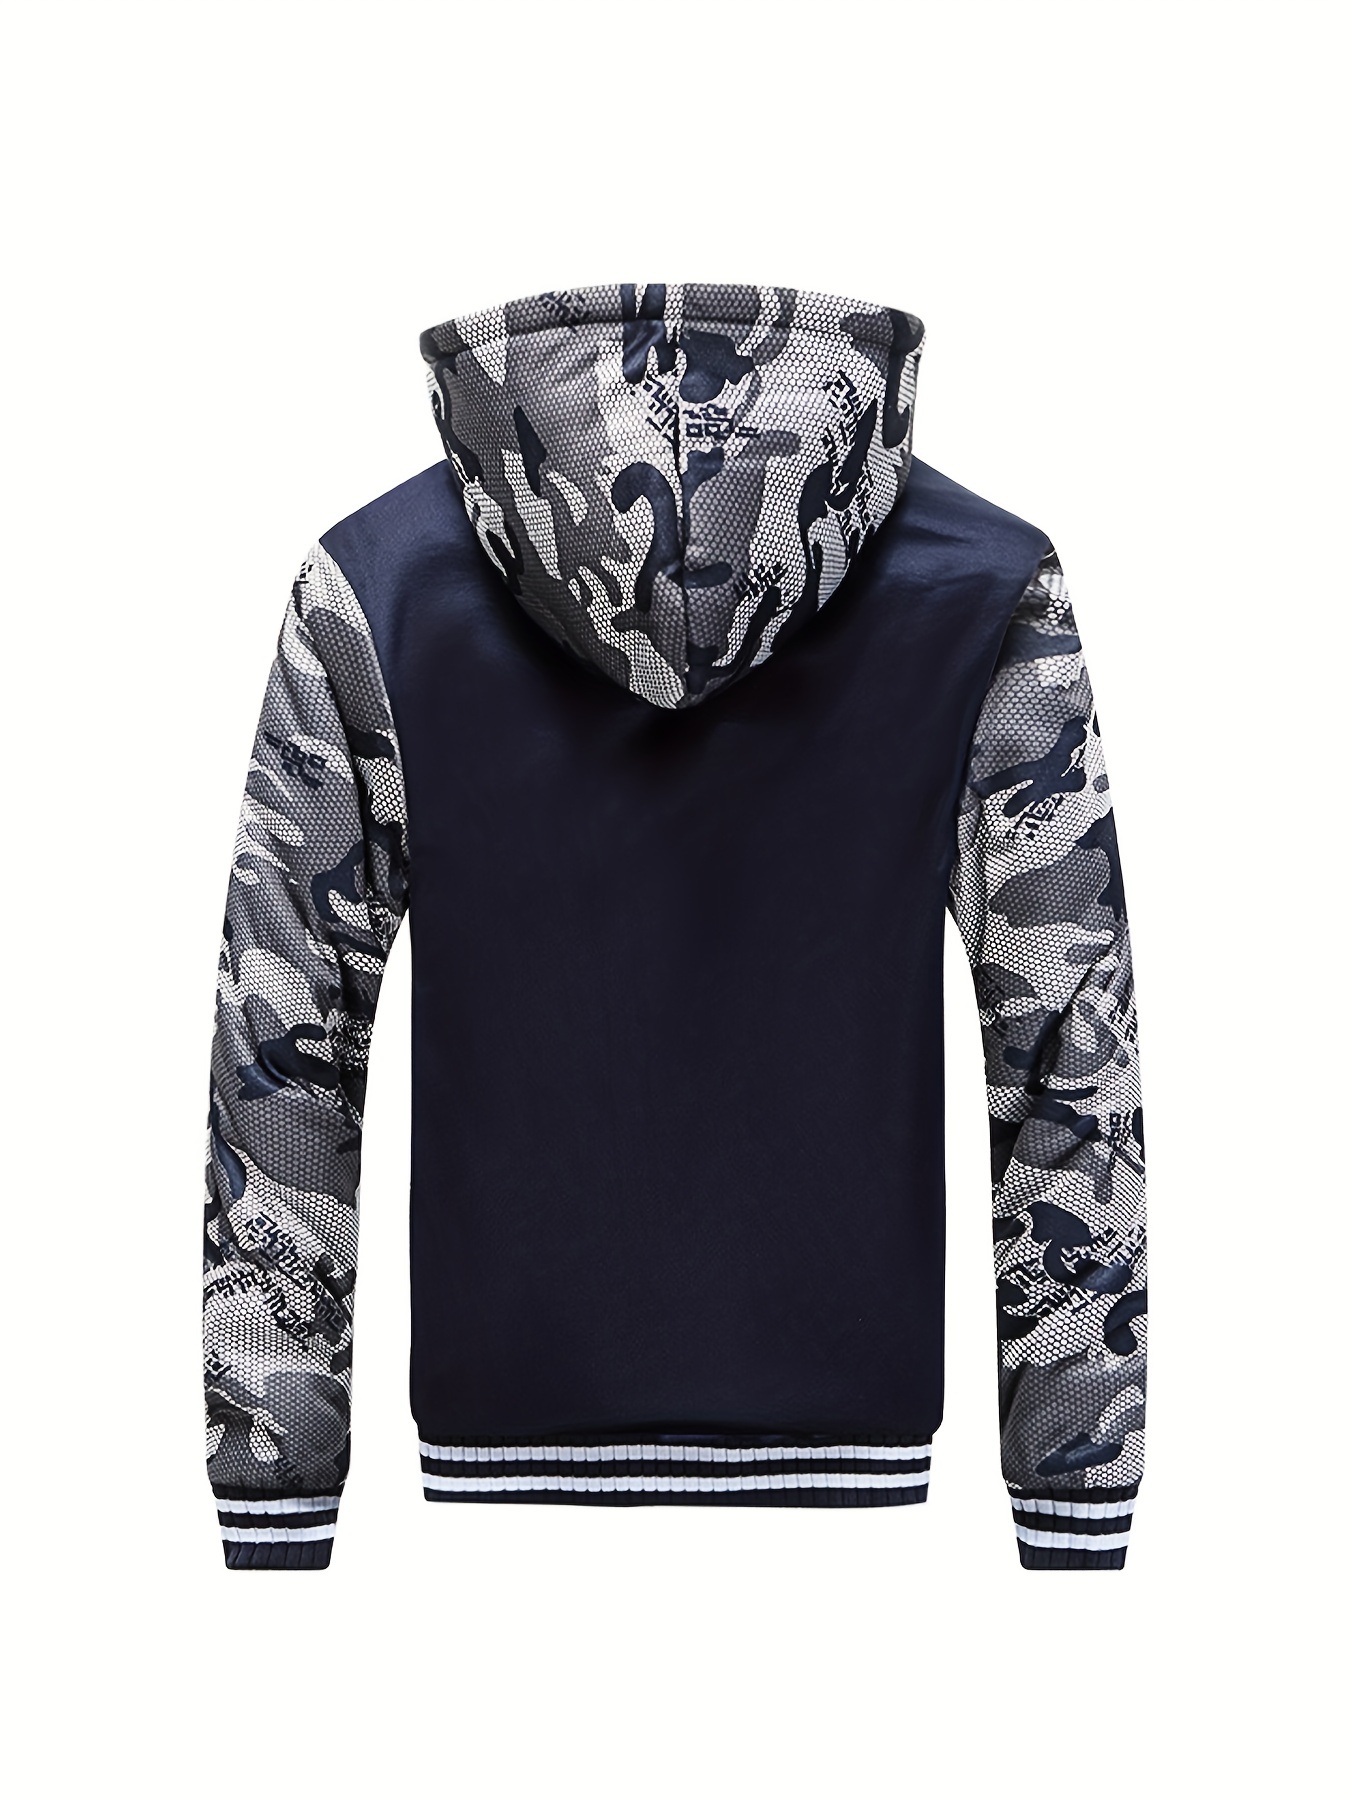 Men's Double-Sided Fleece Warm Hooded Zipper Casual Jacket Winter  Sweatshirt Fleece Sherpa Lined Hoodie Jackets